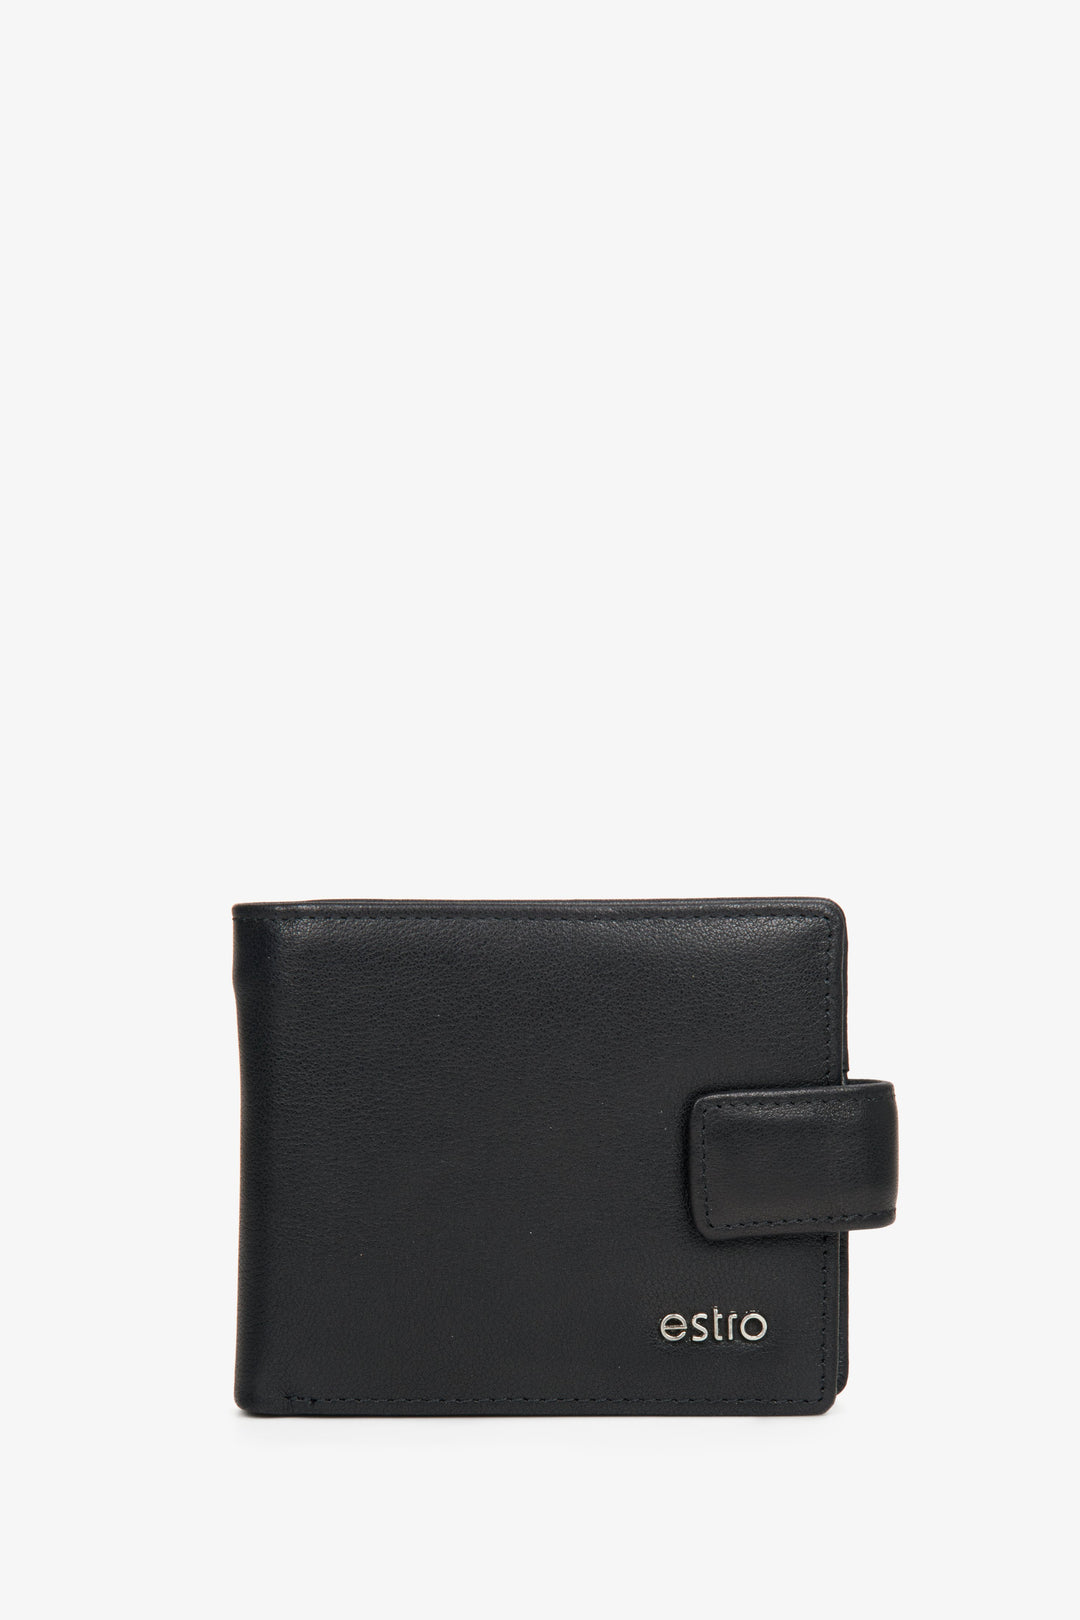 Men's black wallet by Estro.